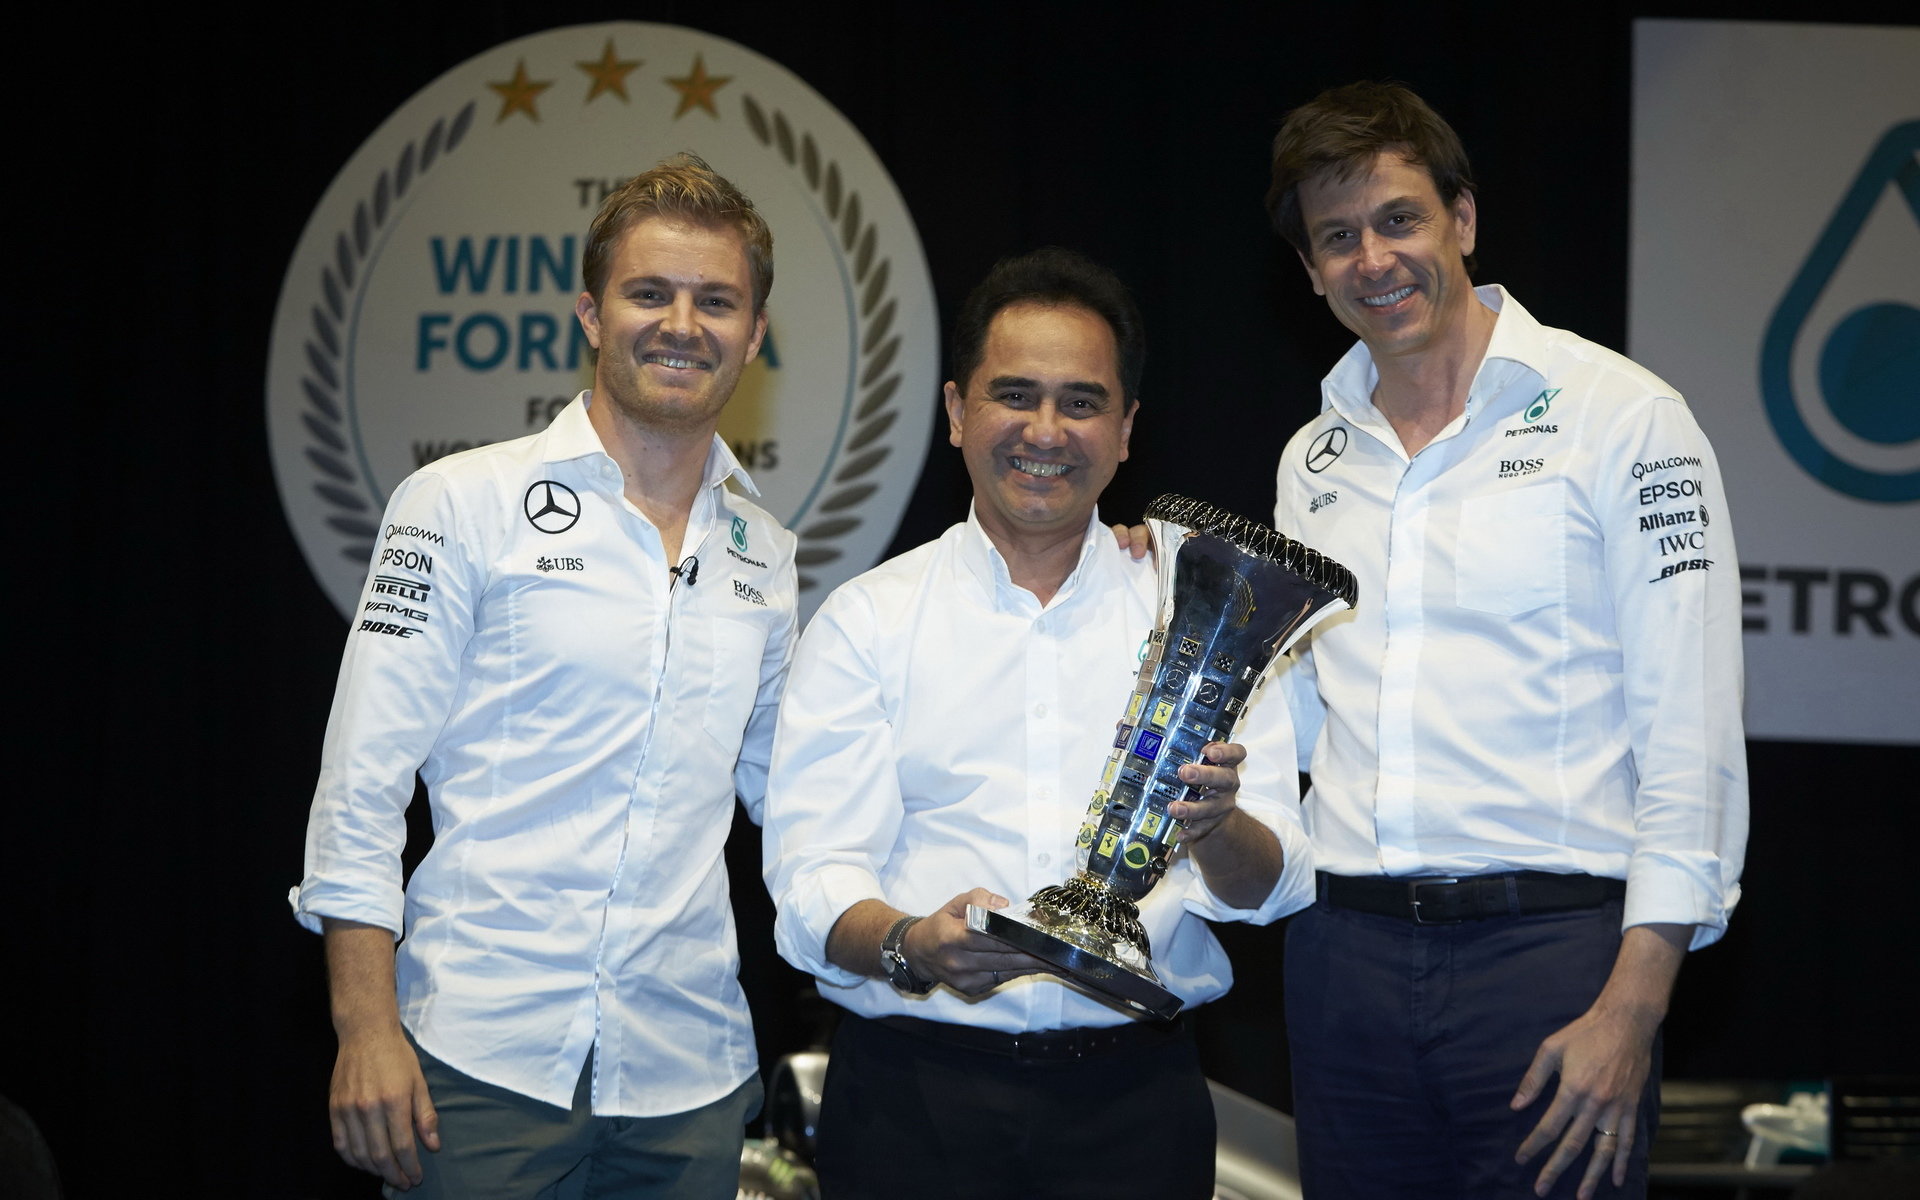 Nico Rosberg a Toto Wolff při oslavách titulu s Petronasem v Malajsii